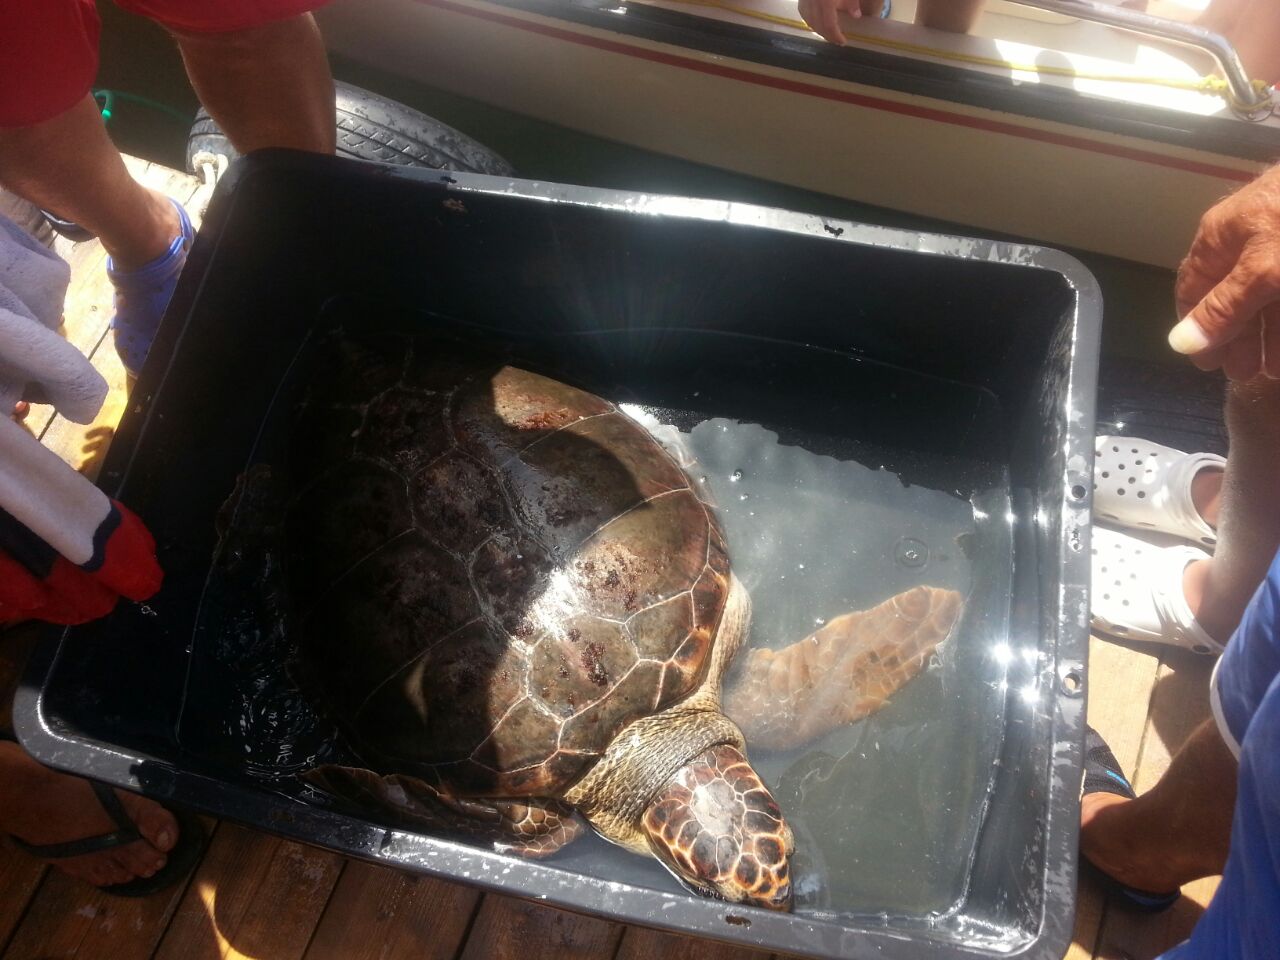  P.Secca, ritrovata a 7 miglia dalla costa una tartaruga gigante: è una caretta-caretta di 60 chili FOTO